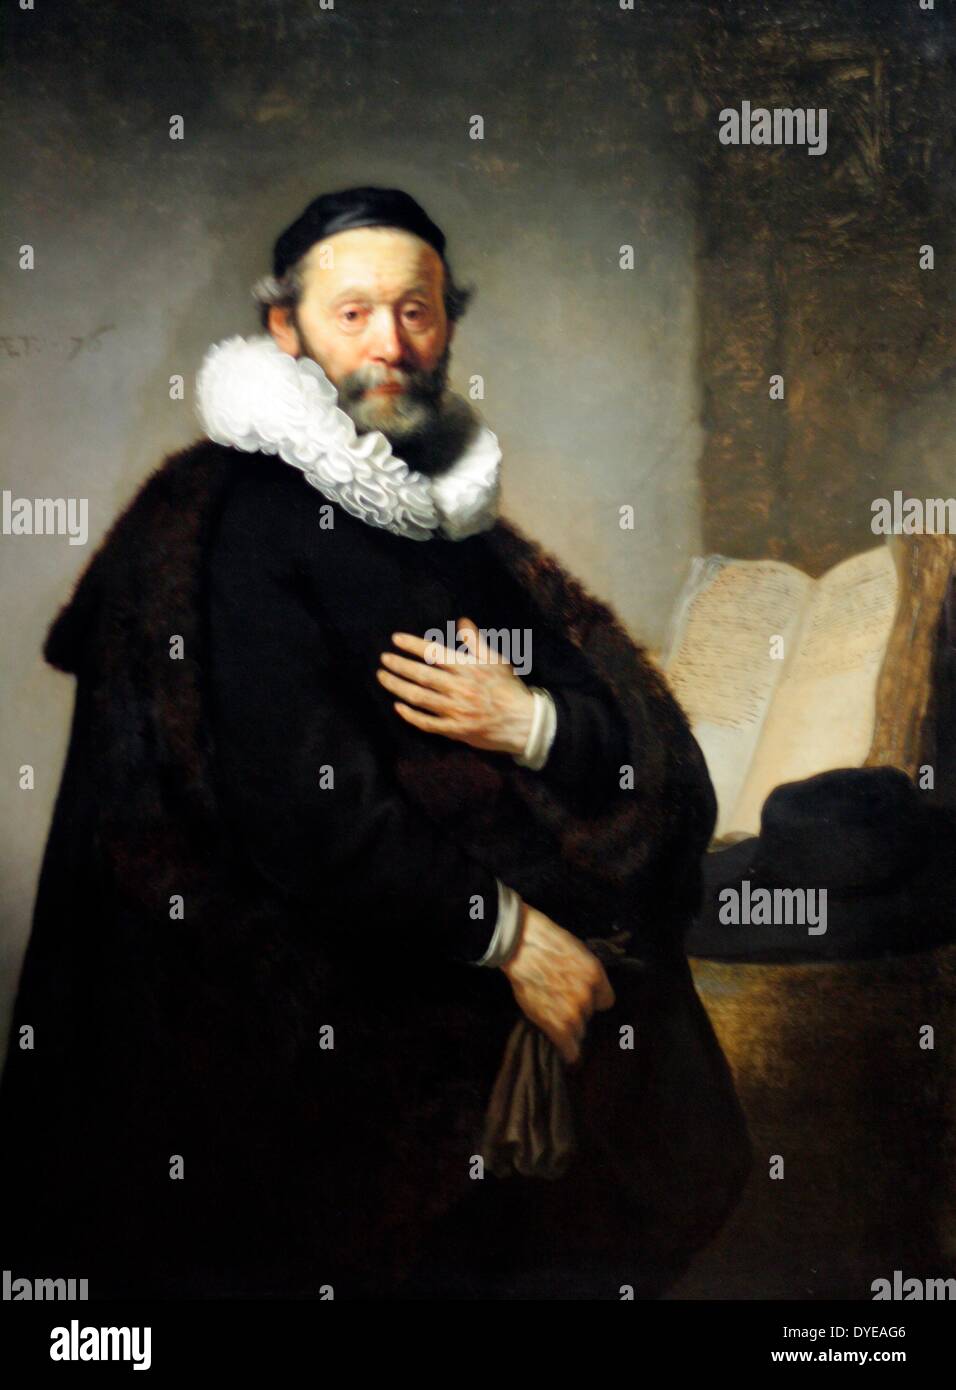 Ritratto di Johannes Wtenbogaert da Rembrandt Harmensz van Rijn (1606-1669), olio su tela, 1633. Il 76 enne Remonstrant ministro, una volta che la Corte è cappellano del Principe Maurice, indossa una calotta (zucchetto) e un 'tabard', una pelliccia mantello - il tipo di abbigliamento studiosi anziani preferito essere ritratte in. Wtenbgaert il fatto è più realisticamente modellati rispetto le sue mani, che può essere stato fatto da un allievo di Rembrandt della bottega. Foto Stock